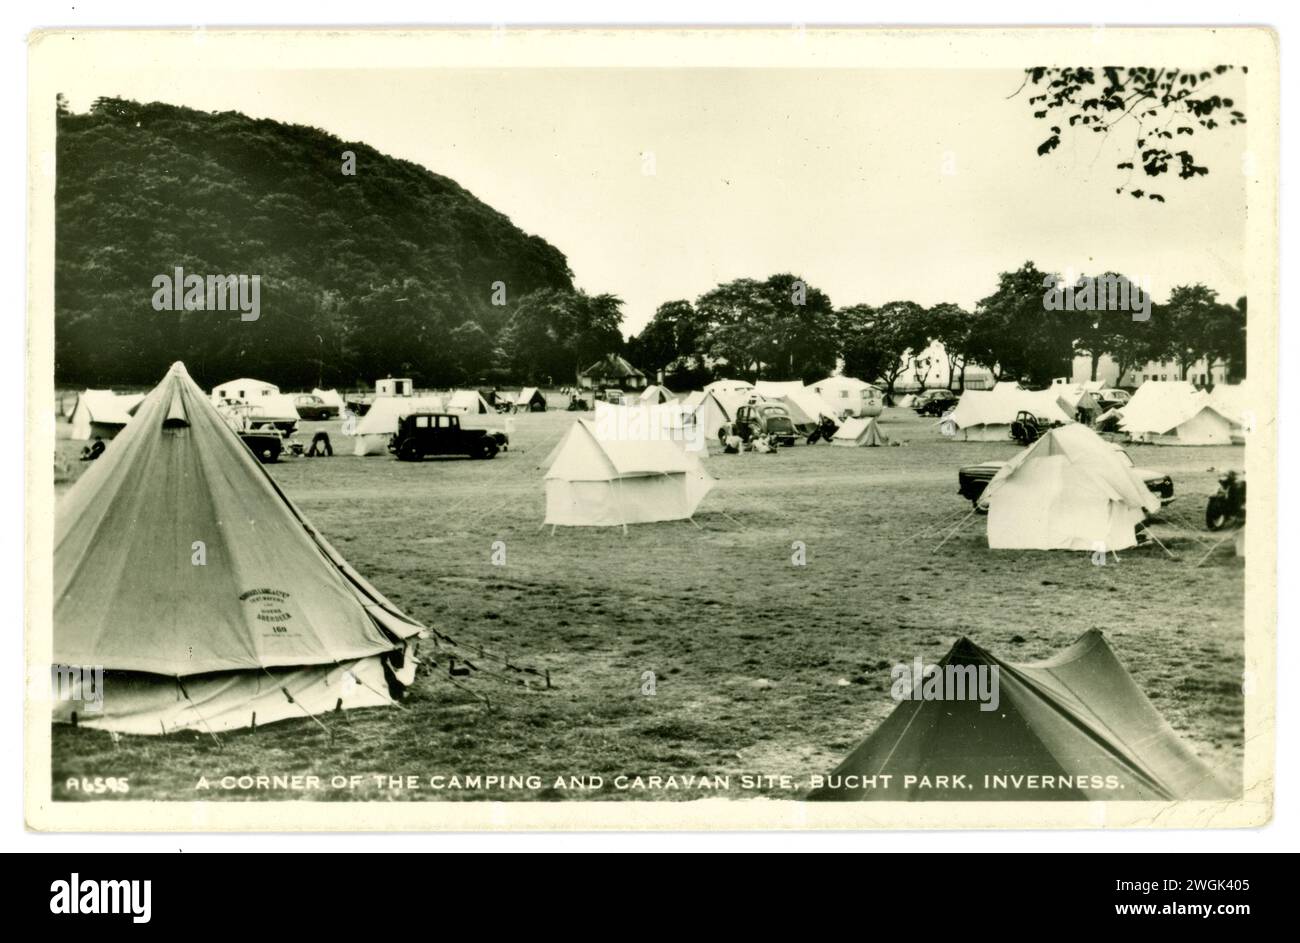 Cartolina originale degli anni '1950 o primi anni '1960 di un campeggio scozzese - campeggio e roulotte, molte tende di tela e tela, vecchi veicoli, tende campanili, a Bught Park, Inverness, Scozia, Regno Unito Foto Stock